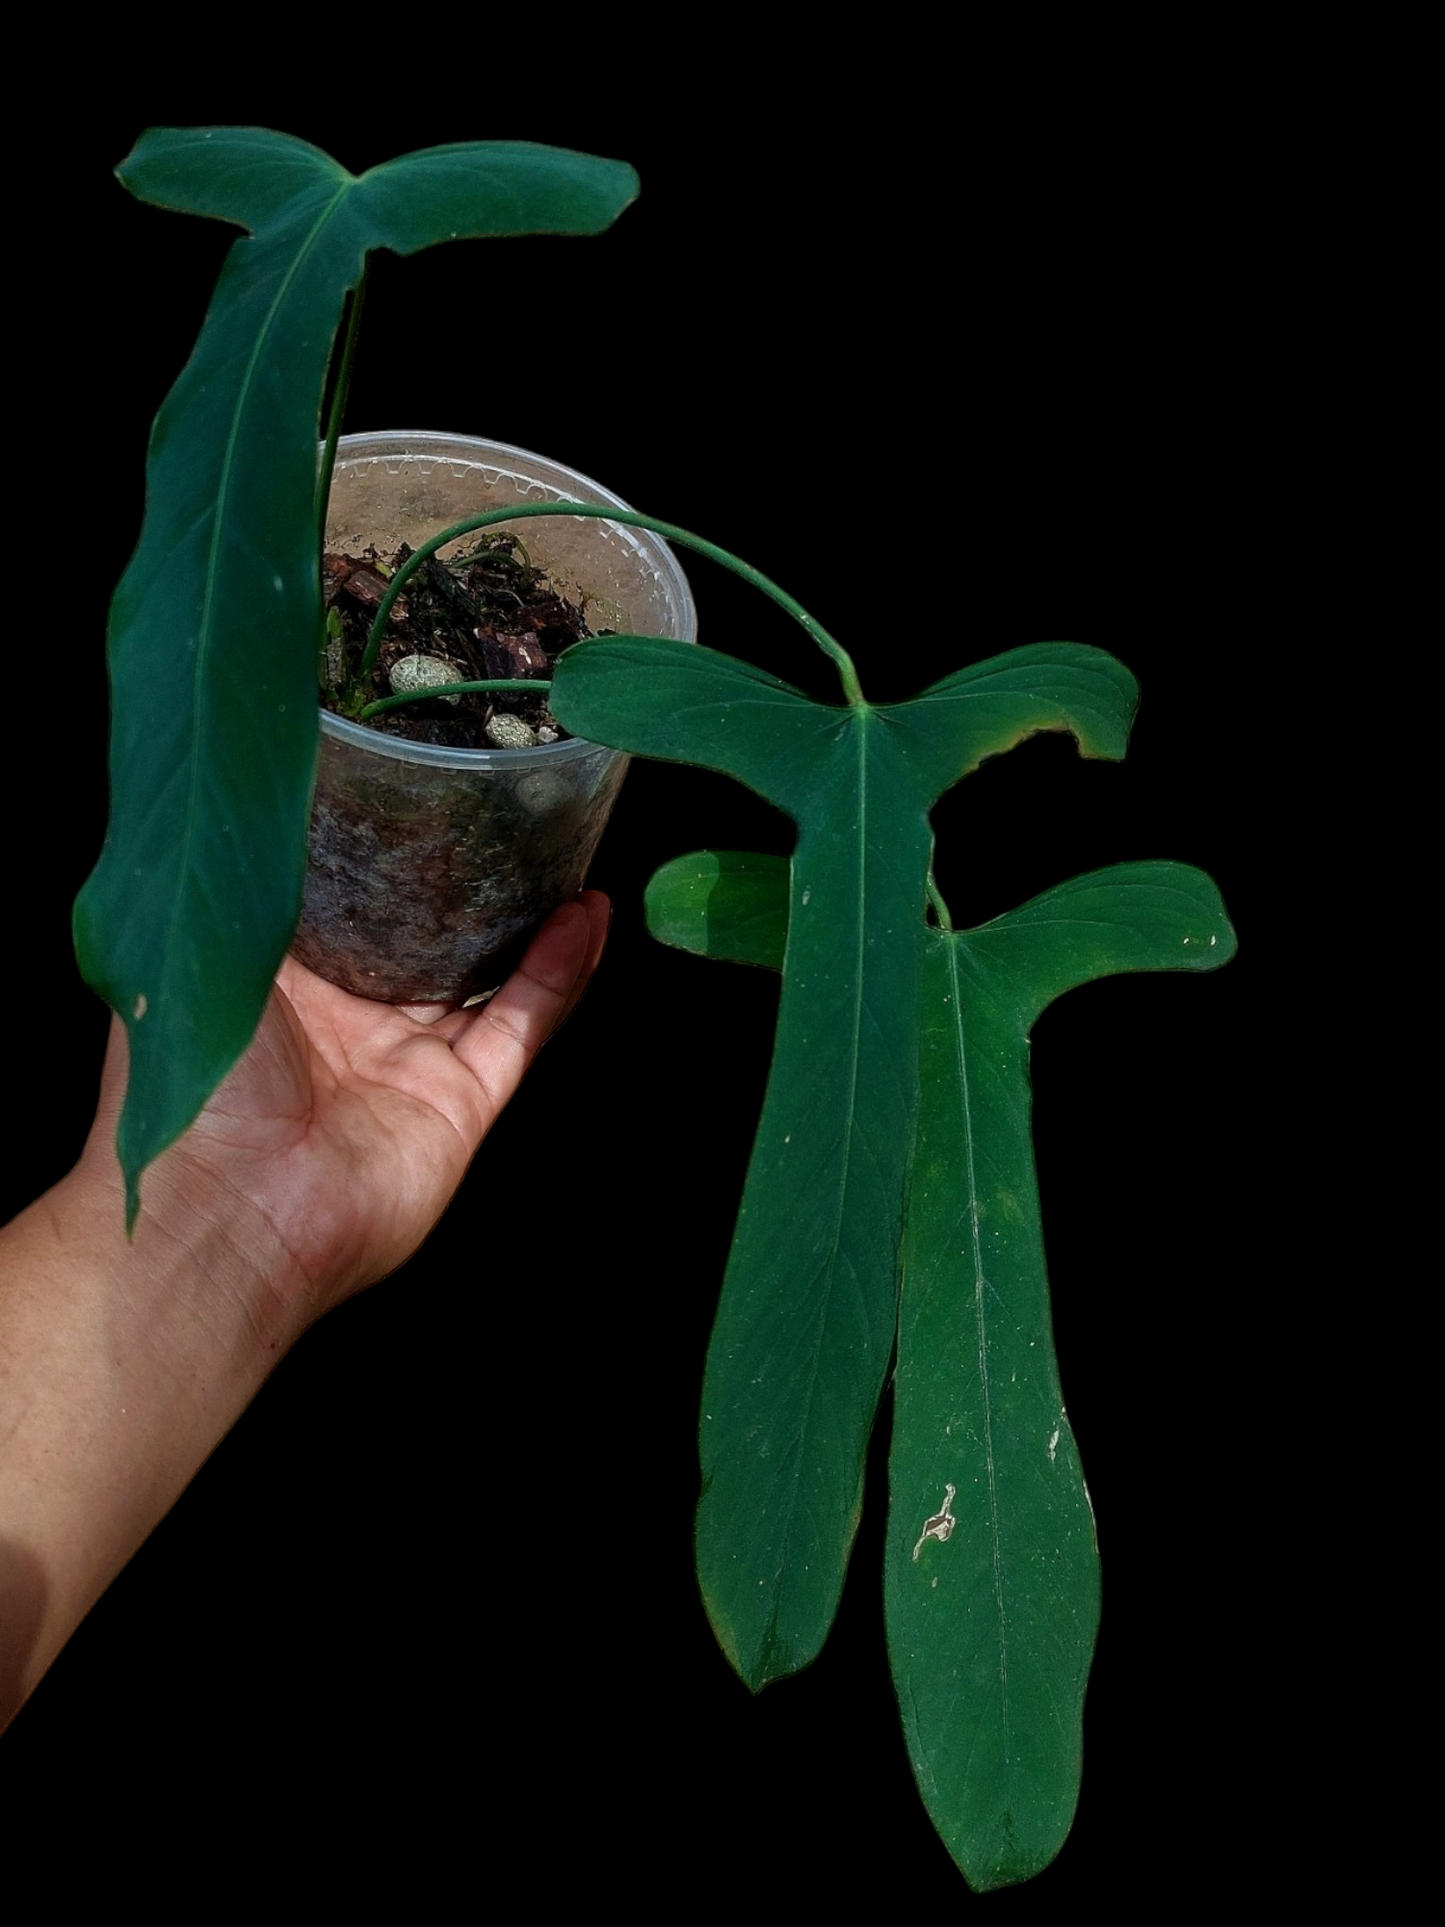 Anthurium Argyrostachyum 'Velvety' BIG PLANT (EXACT PLANT)